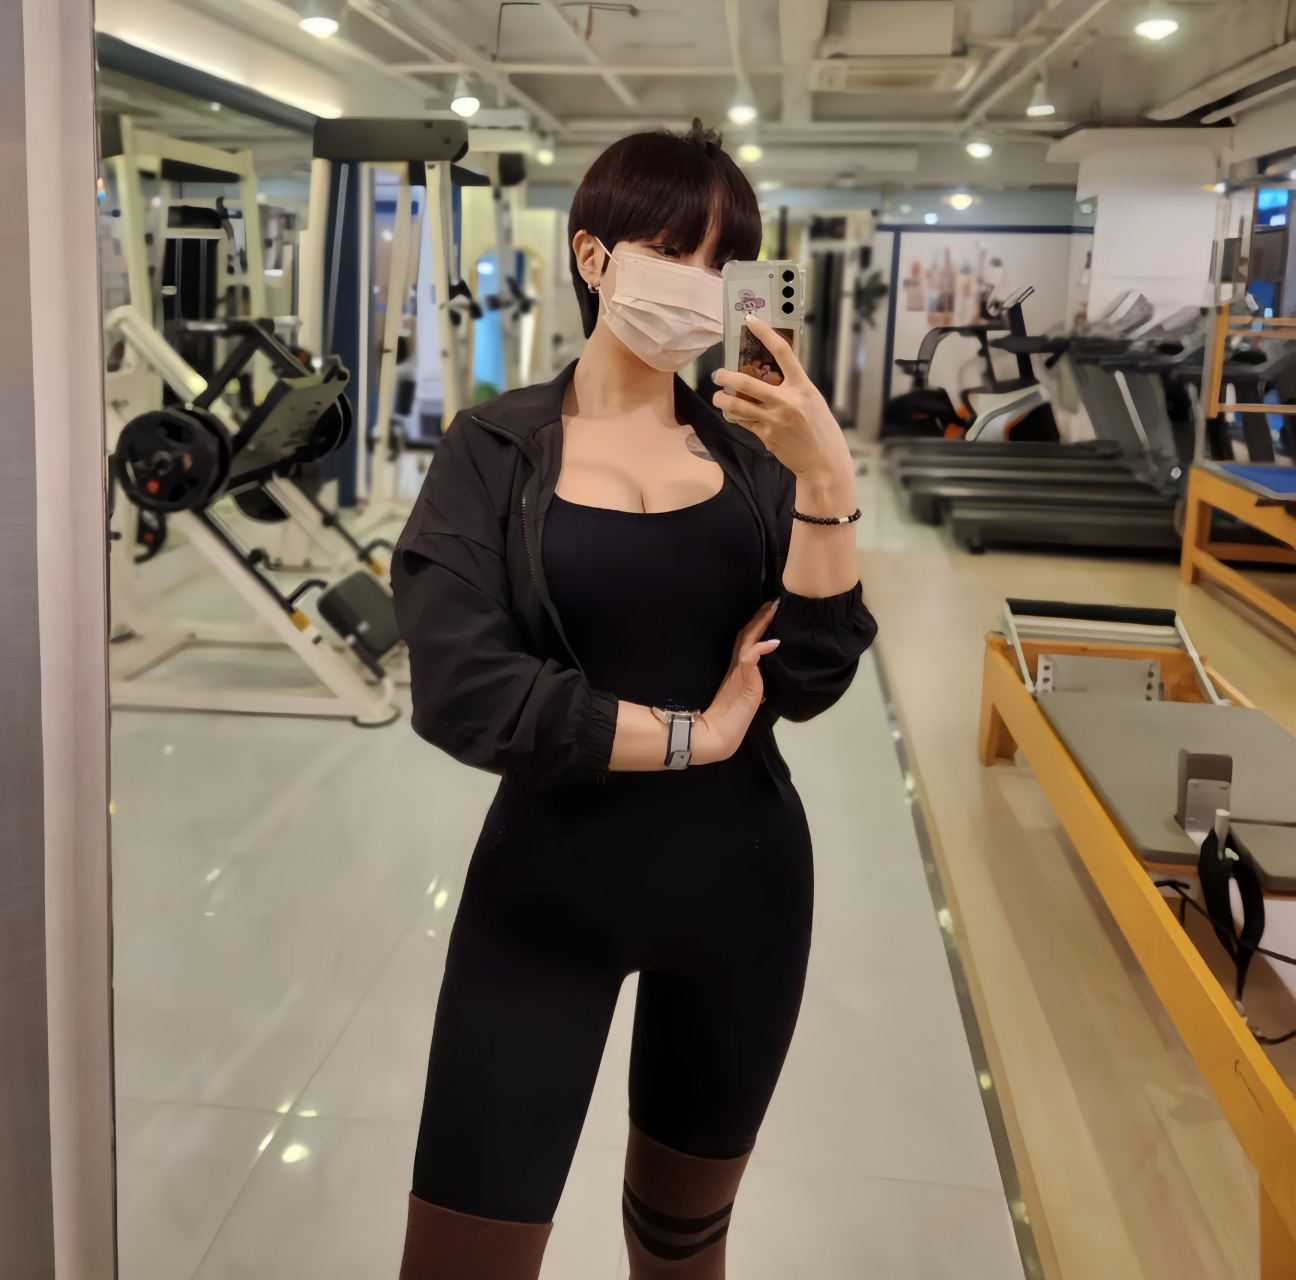 韩国短发妹子健身房里晒身材照,有气质